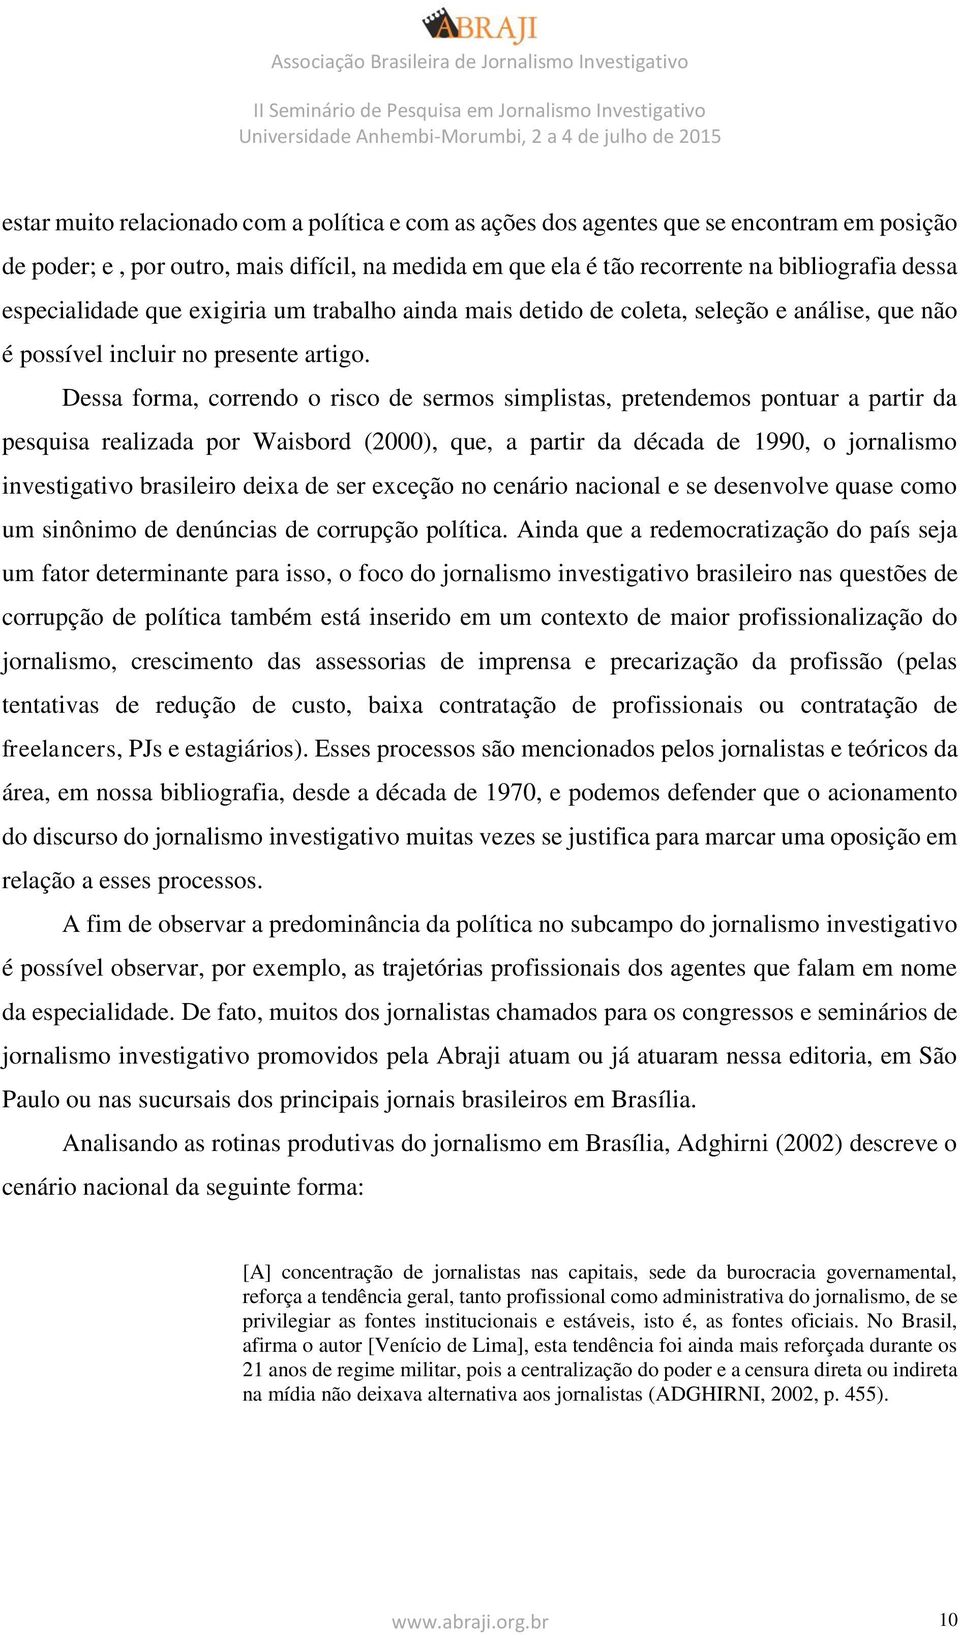 Dessa forma, correndo o risco de sermos simplistas, pretendemos pontuar a partir da pesquisa realizada por Waisbord (2000), que, a partir da década de 1990, o jornalismo investigativo brasileiro